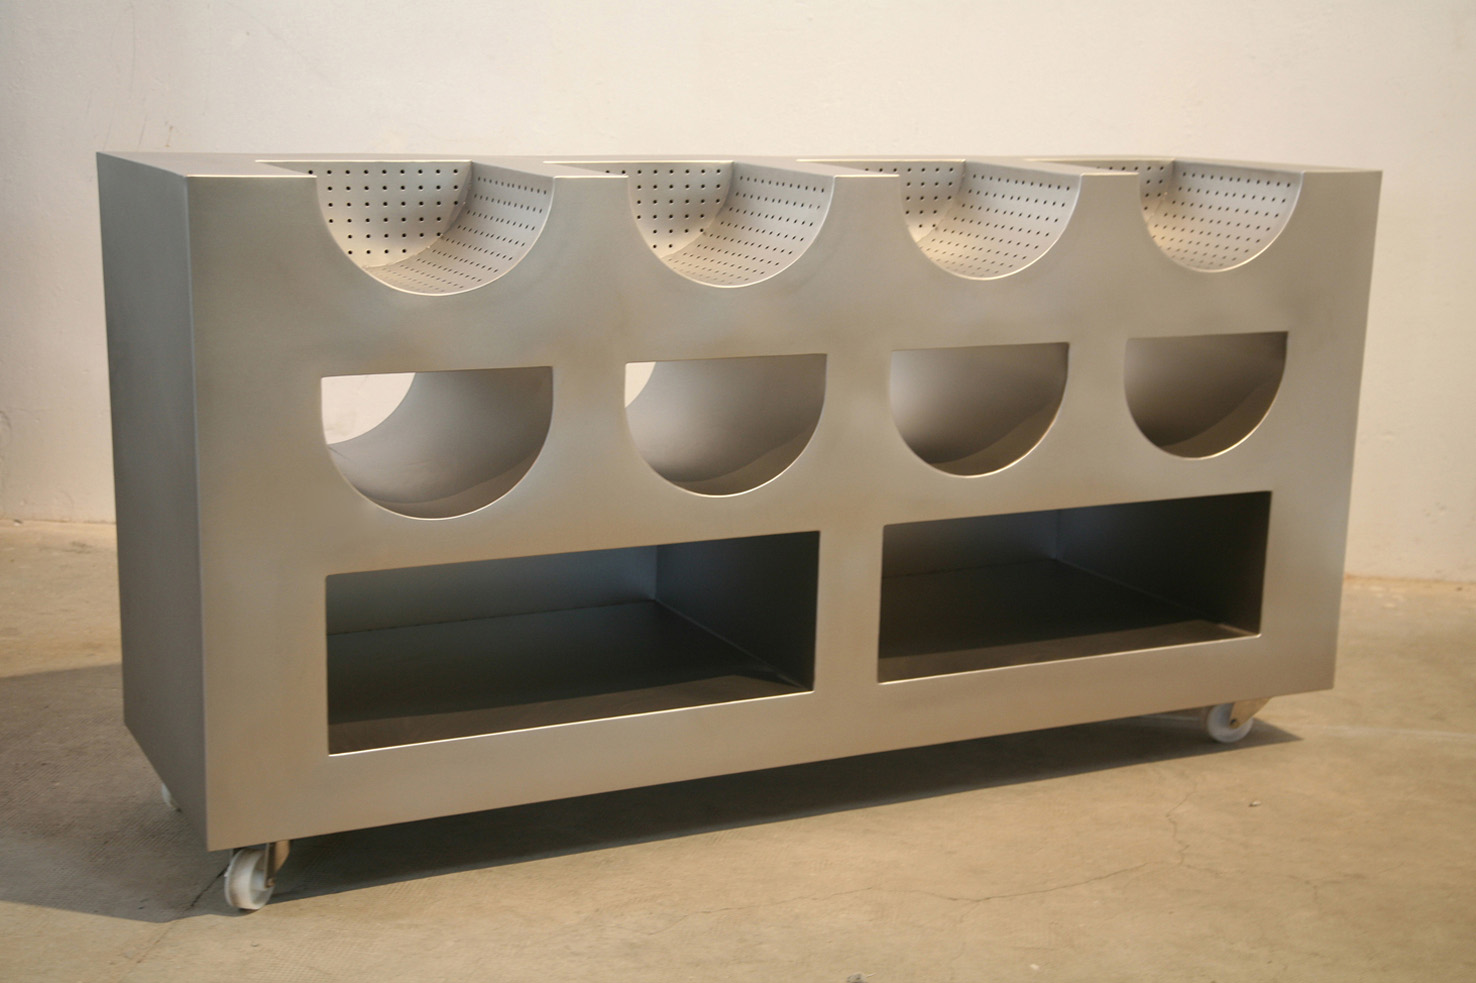 Mueble 2, 2014, acero inoxidable satinado, 98,5 x 180 x 55 cm.